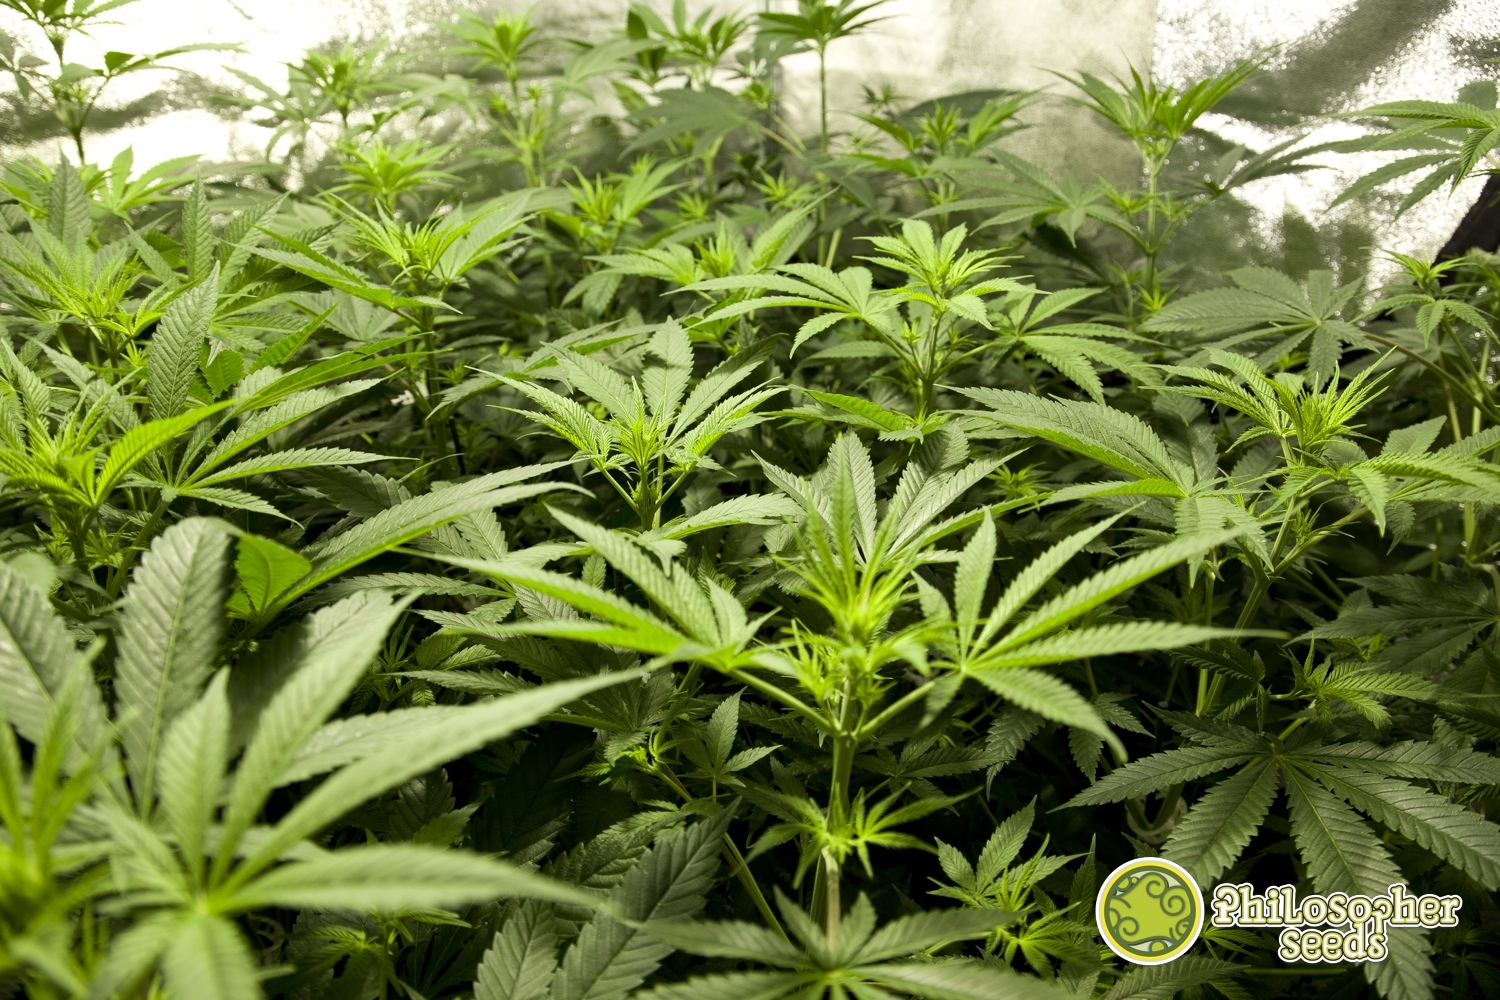 Top 3 des variétés de cannabis les plus productives